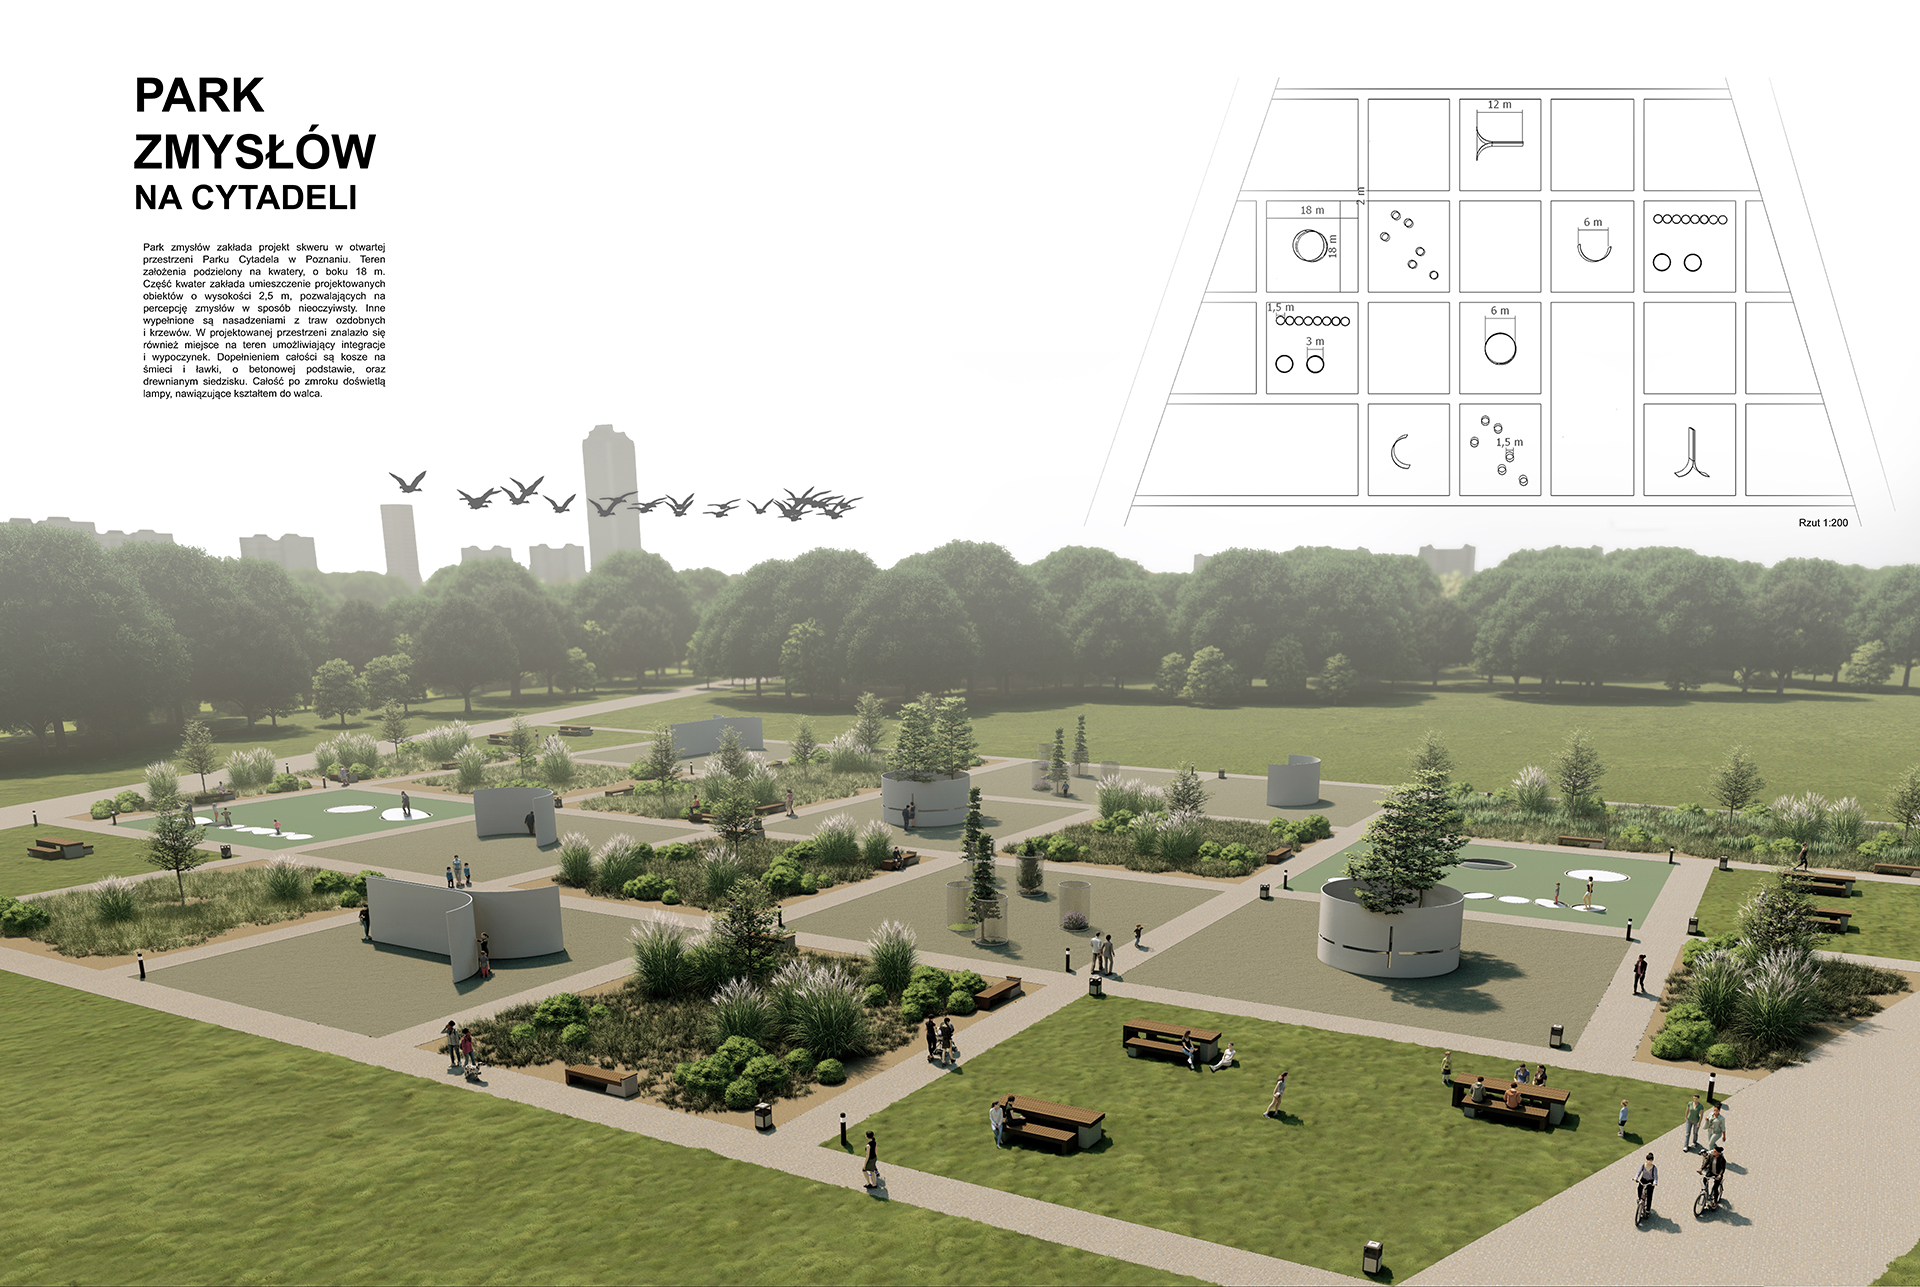 Projekt koncepcyjny Parku Zmysłów zlokalizowany na Cytadeli w Poznaniu zawierający dużą barwną wizualizację układu parku widzianego z lotu ptaka.